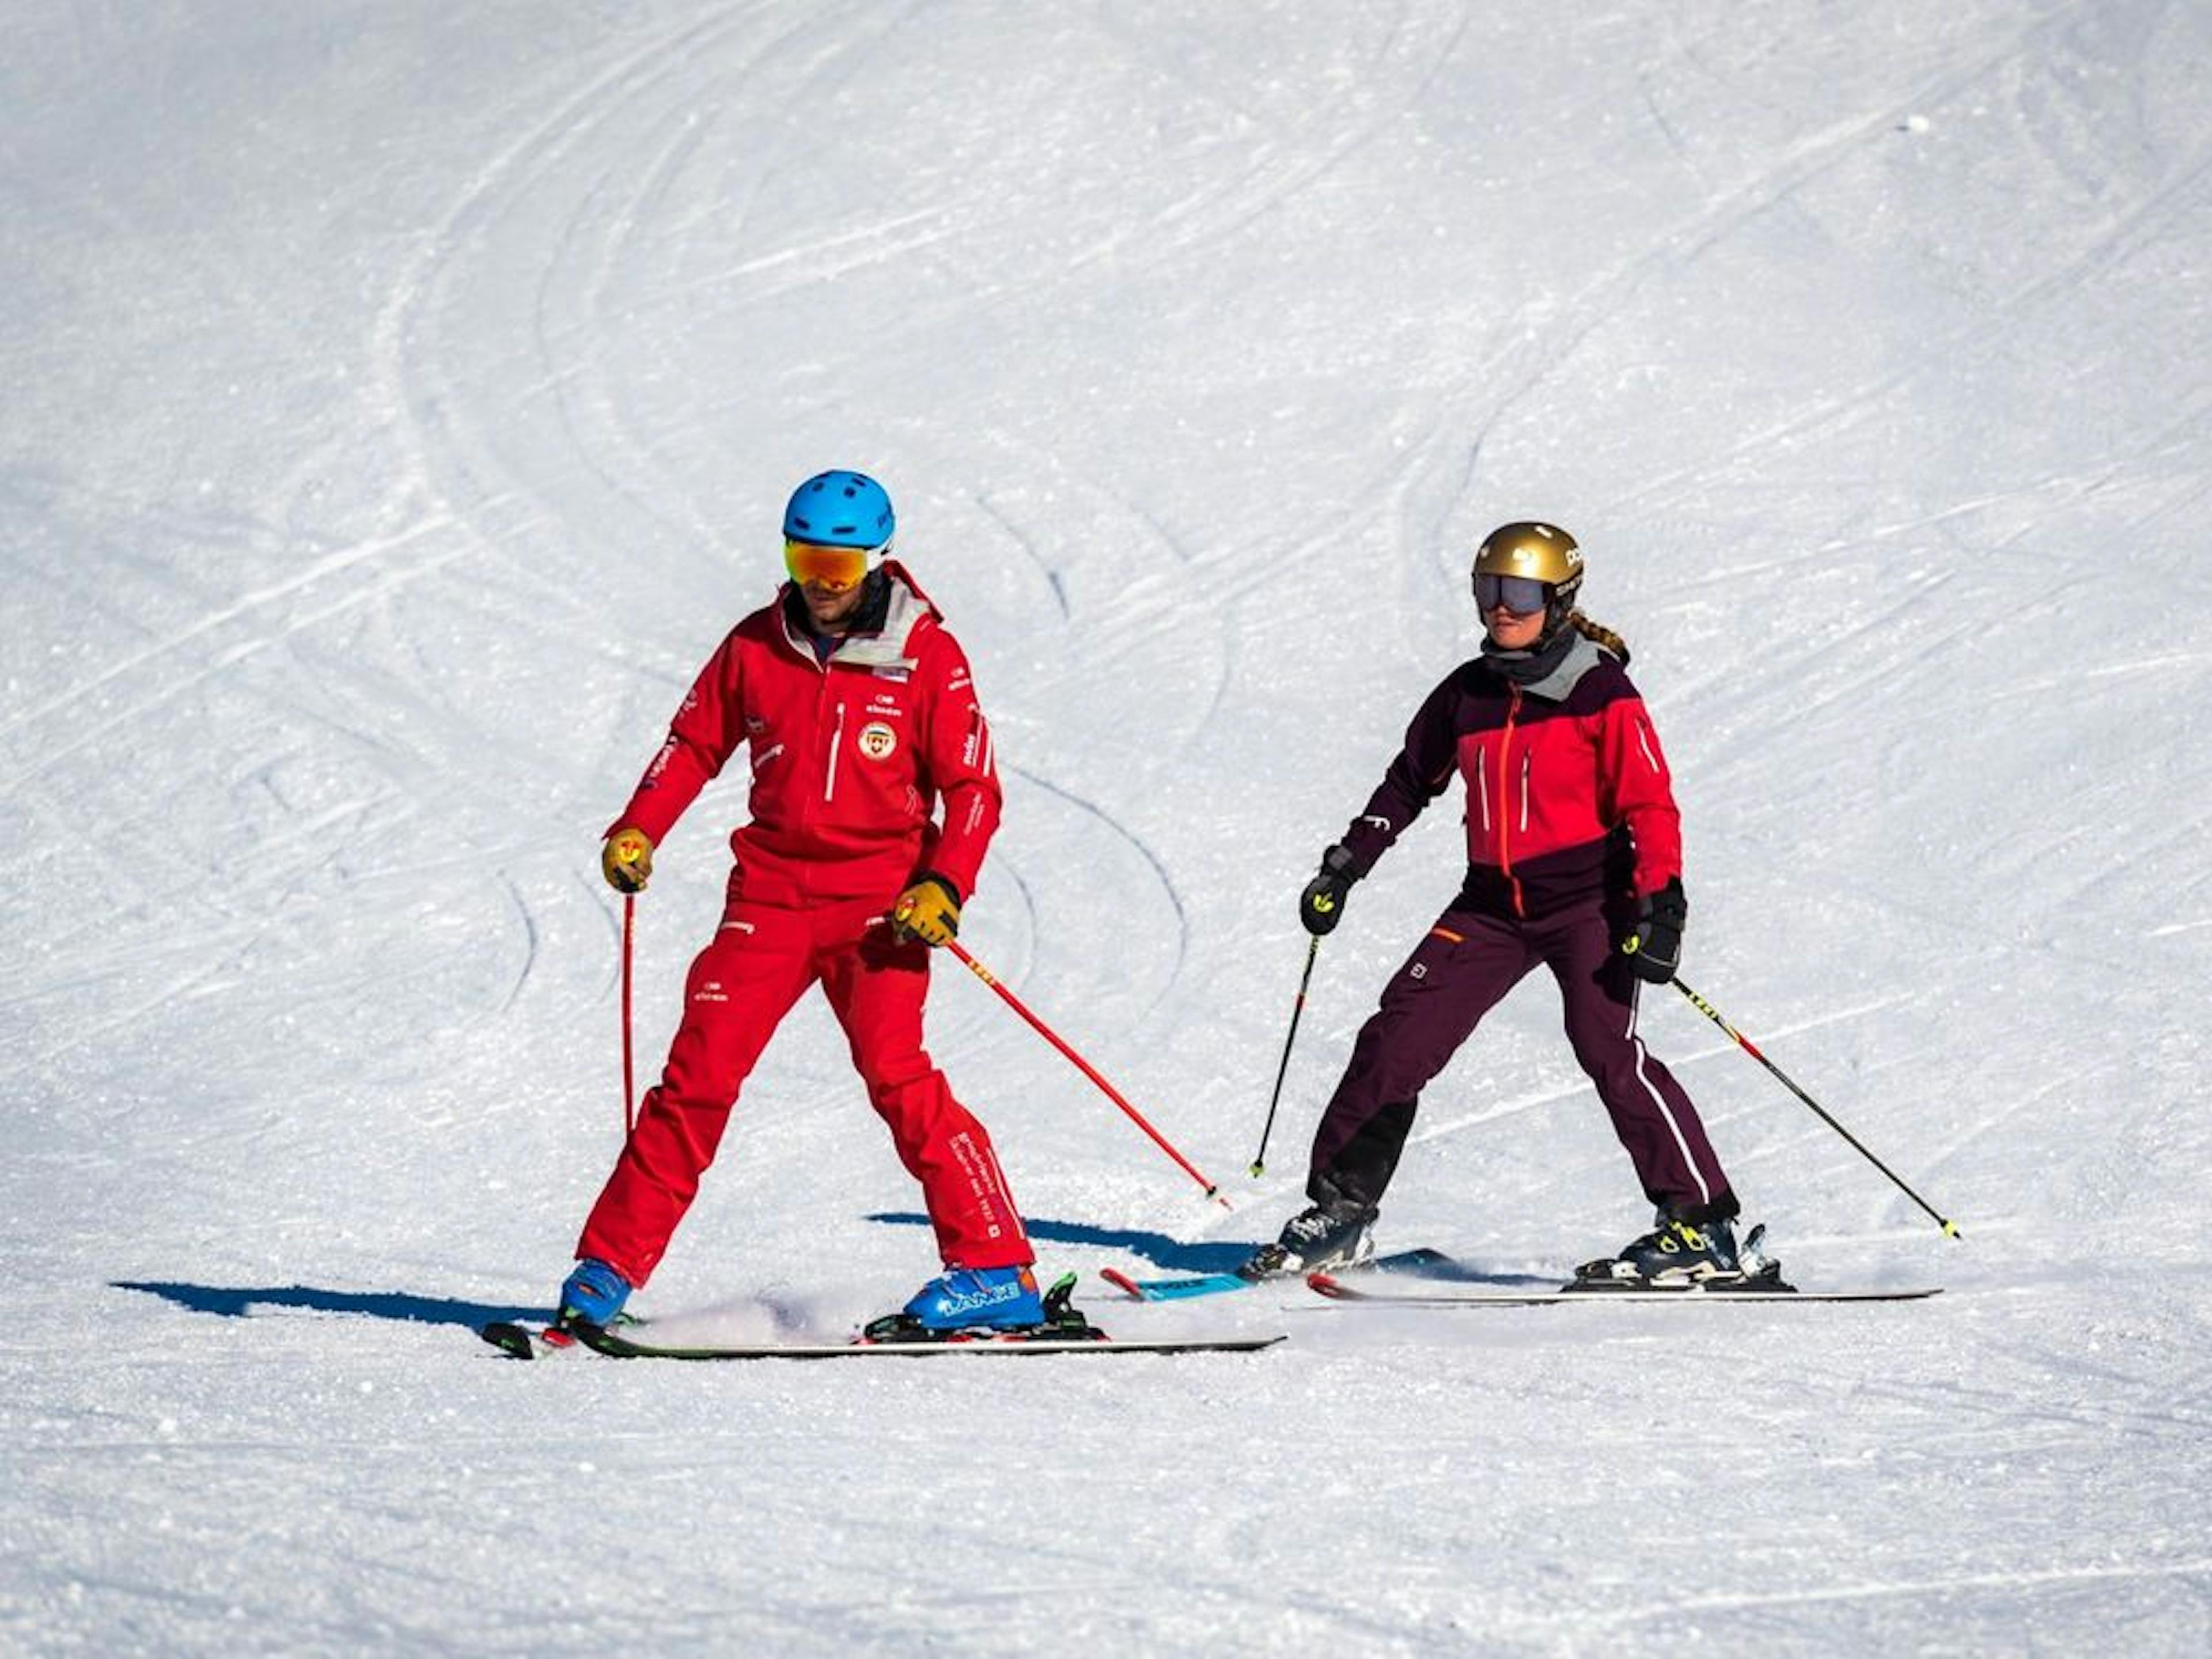 Ski lessons private Grindelwald beginner